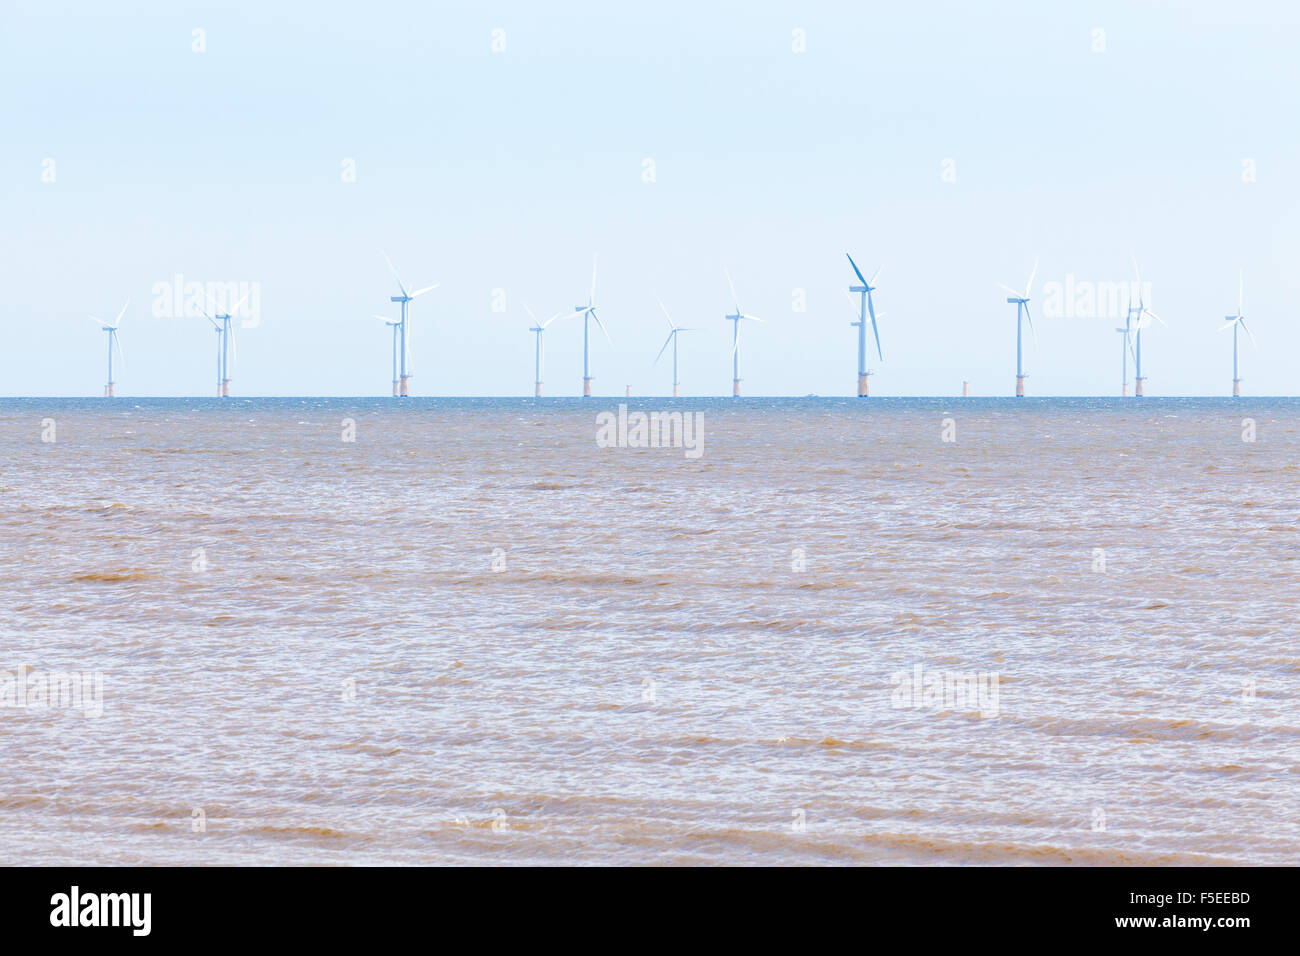 Die Lynn & Inner Dowsing Windpark. Offshore Windkraftanlagen in der Nordsee, von Skegness, Lincolnshire, England, UK gesehen Stockfoto